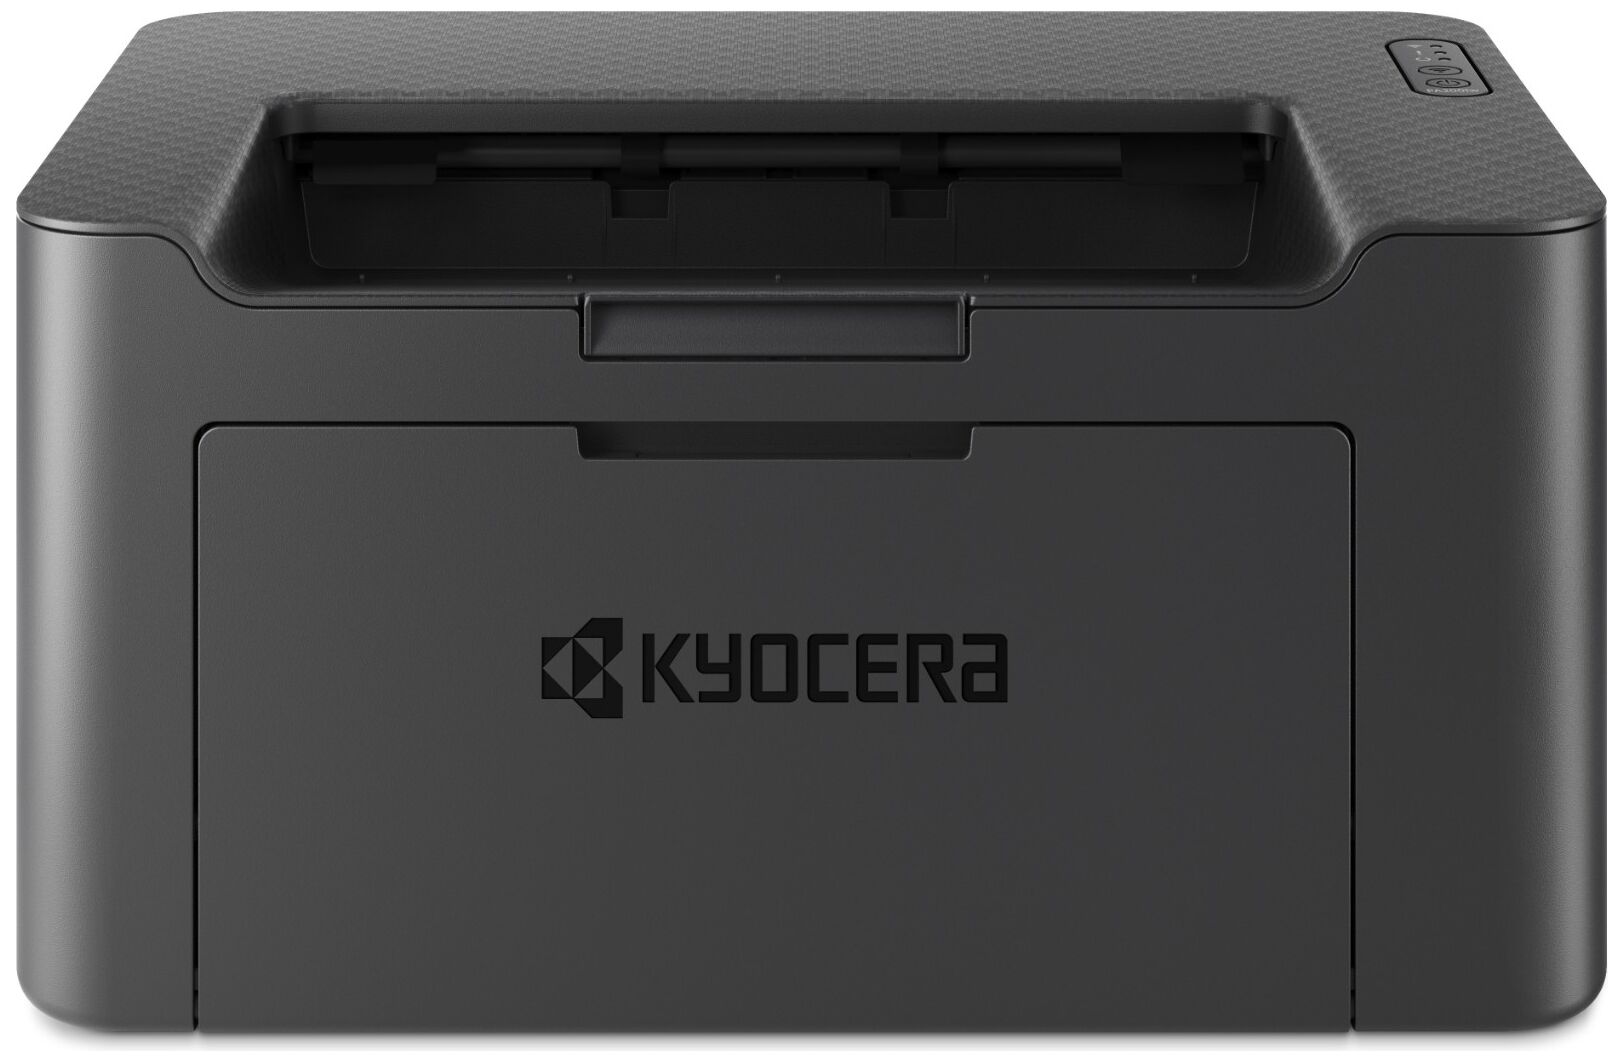 Принтер Kyocera Kyocera ECOSYS PA2001w 1102YVЗNL0/A4 черно-белый/печать Лазерный 600x600dpi 20стр.мин/Wi-Fi